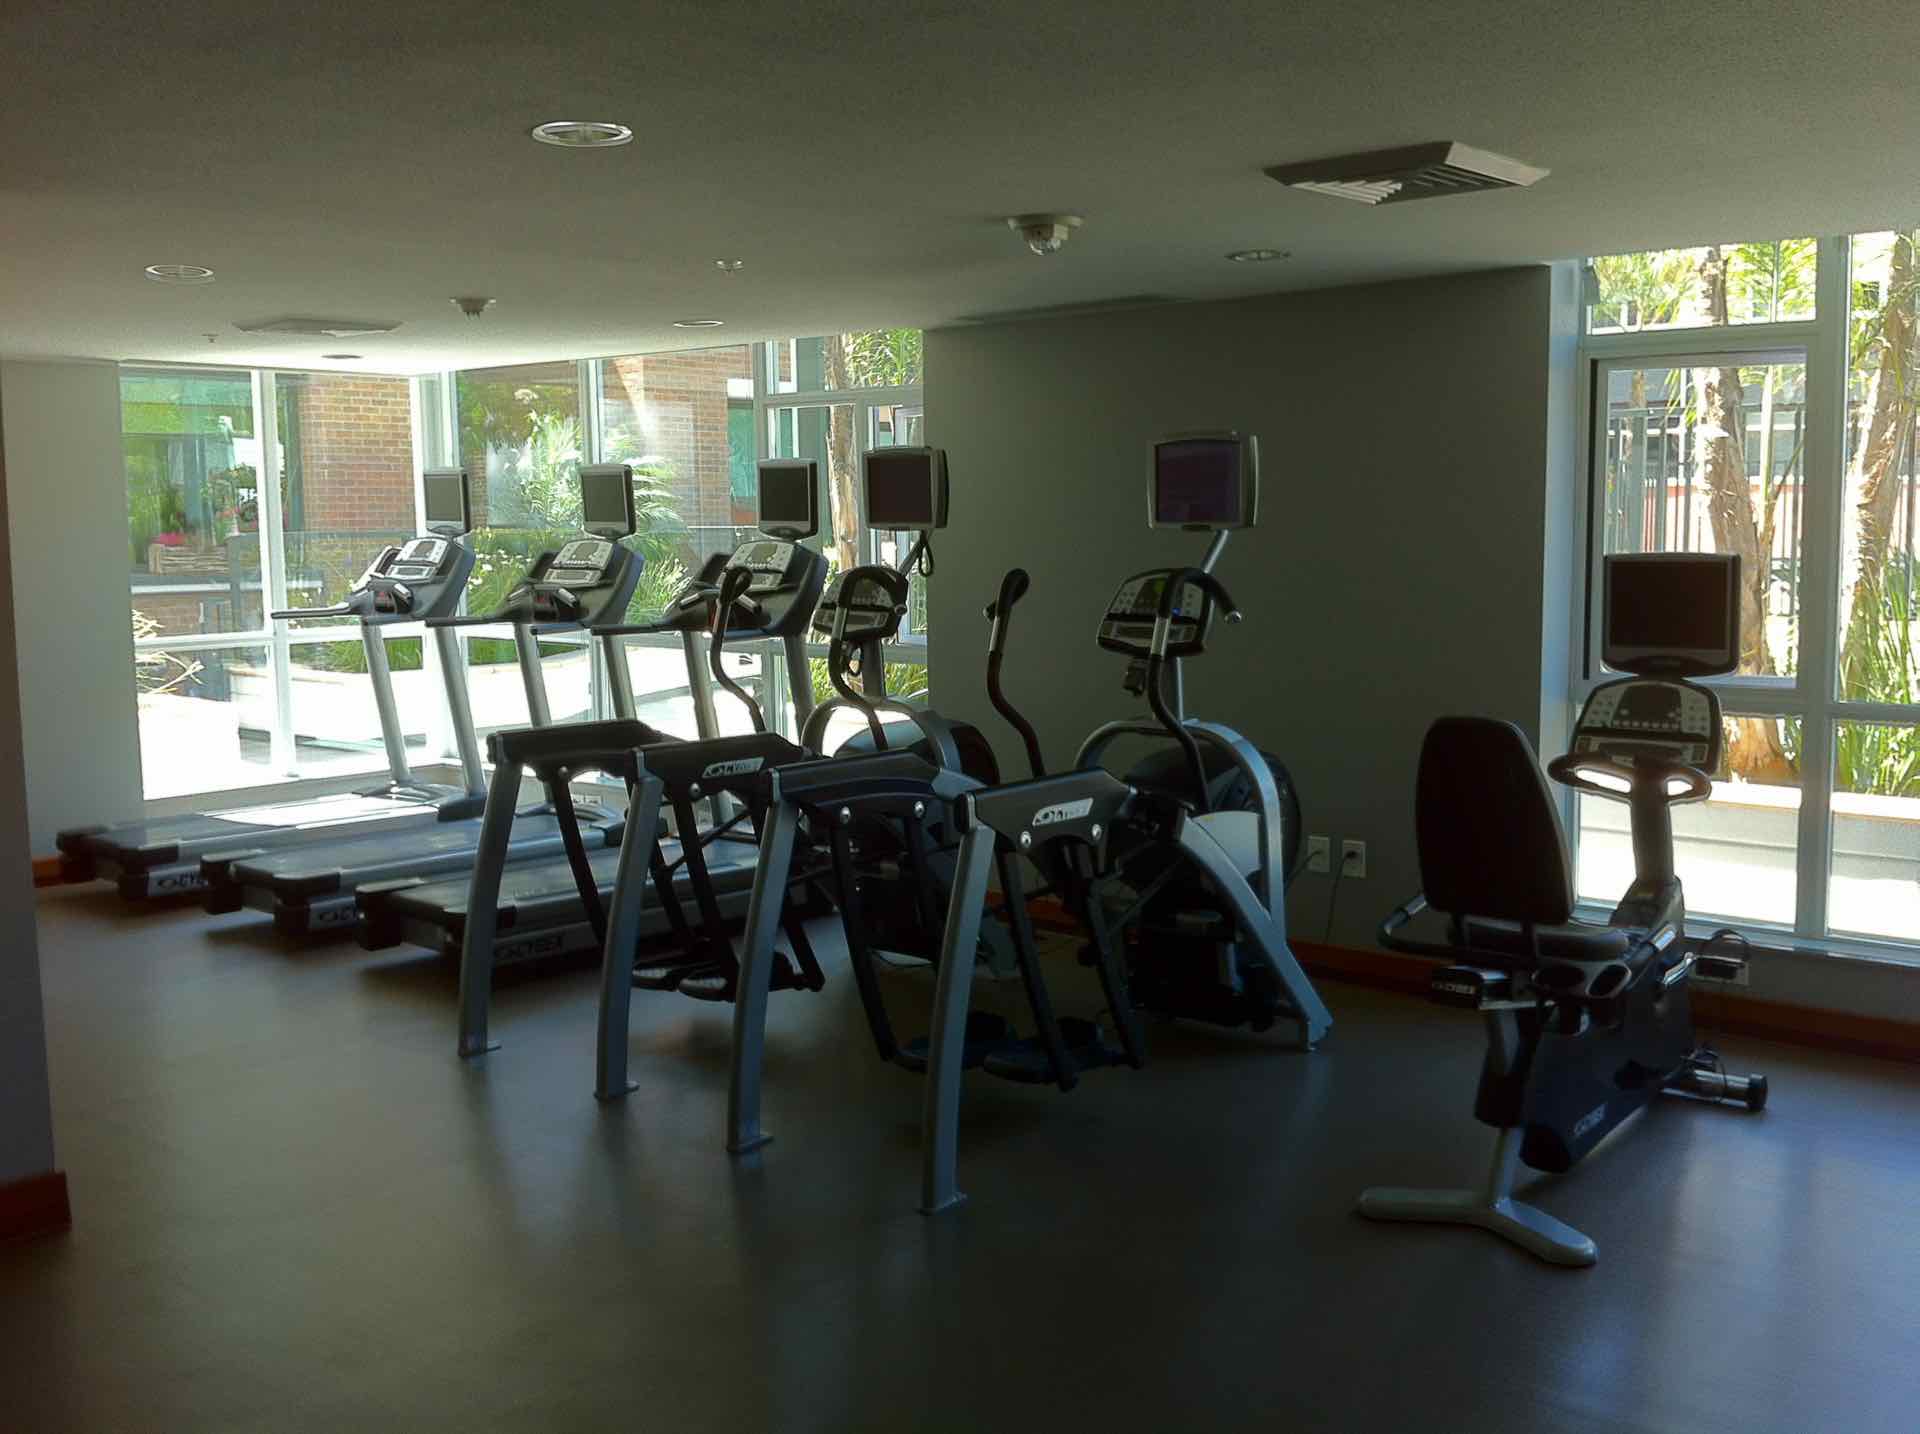 Cardio equipment inside San Diego gym